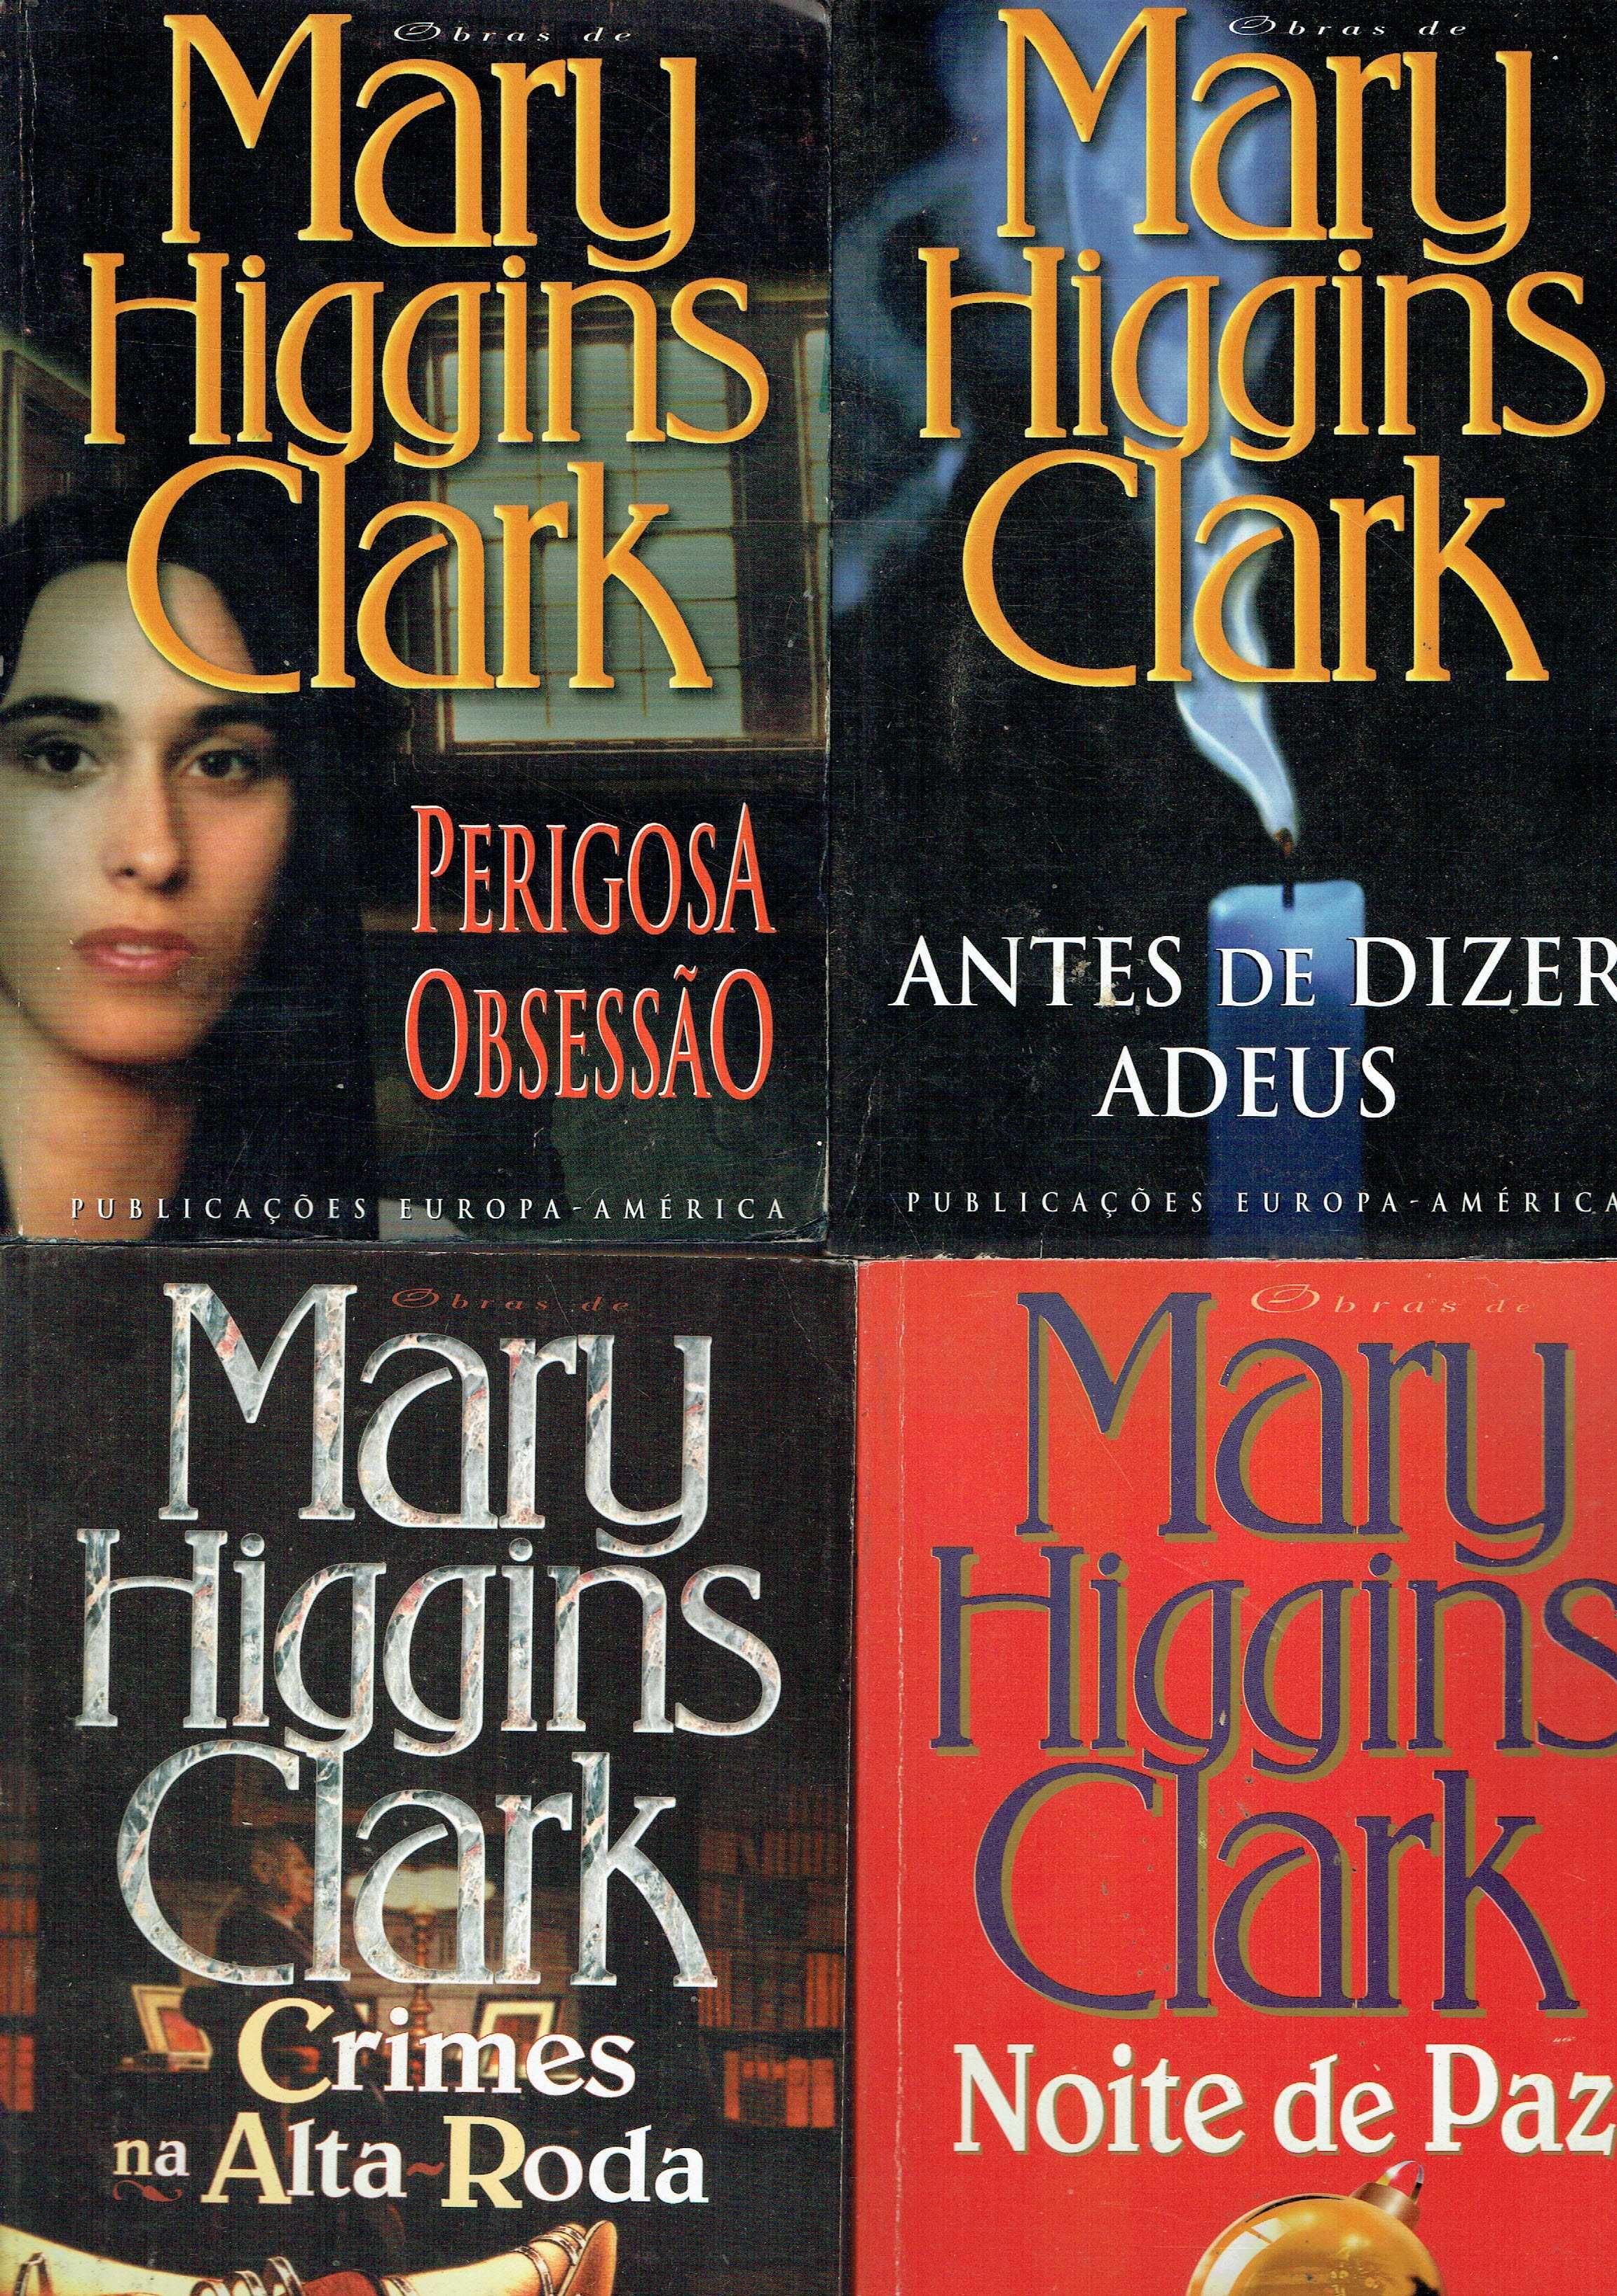 13039

Livros de Mary Higgins Clark